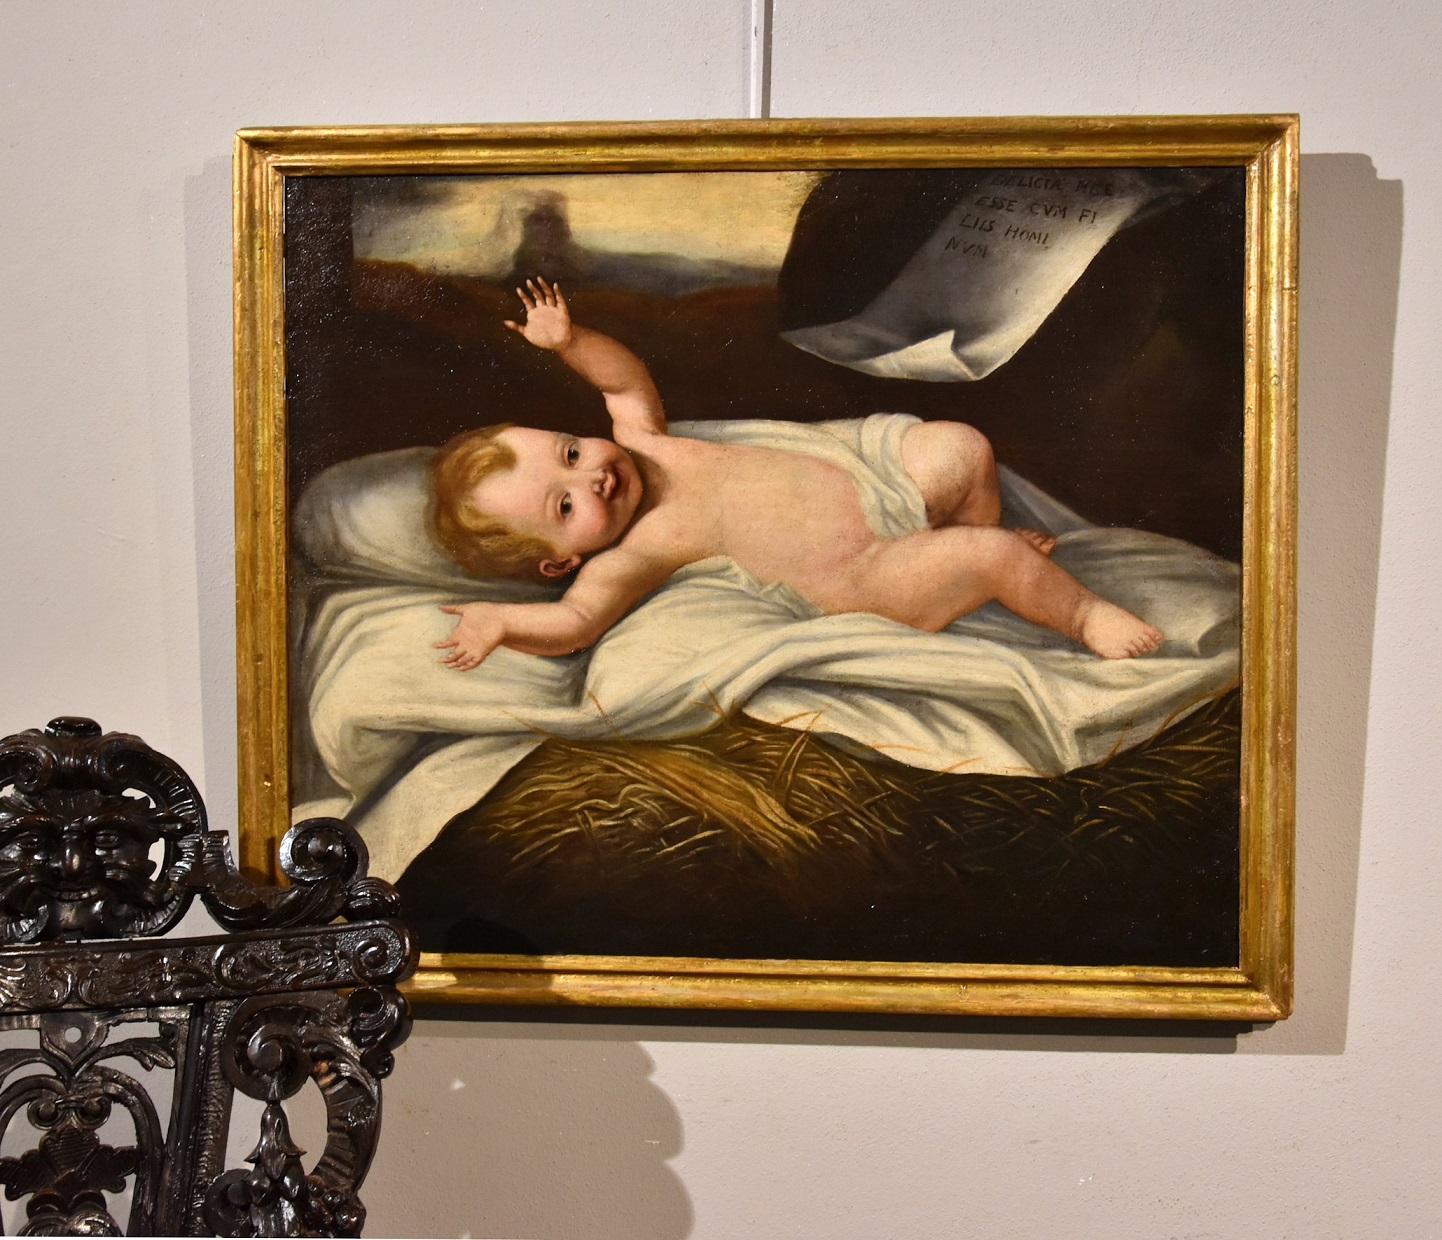 Babykind Jesus, Öl auf Leinwand, alter Meister, 17. Jahrhundert, Italien, religiös, Kind Jesus  – Painting von Lombard painter active in the 17th century